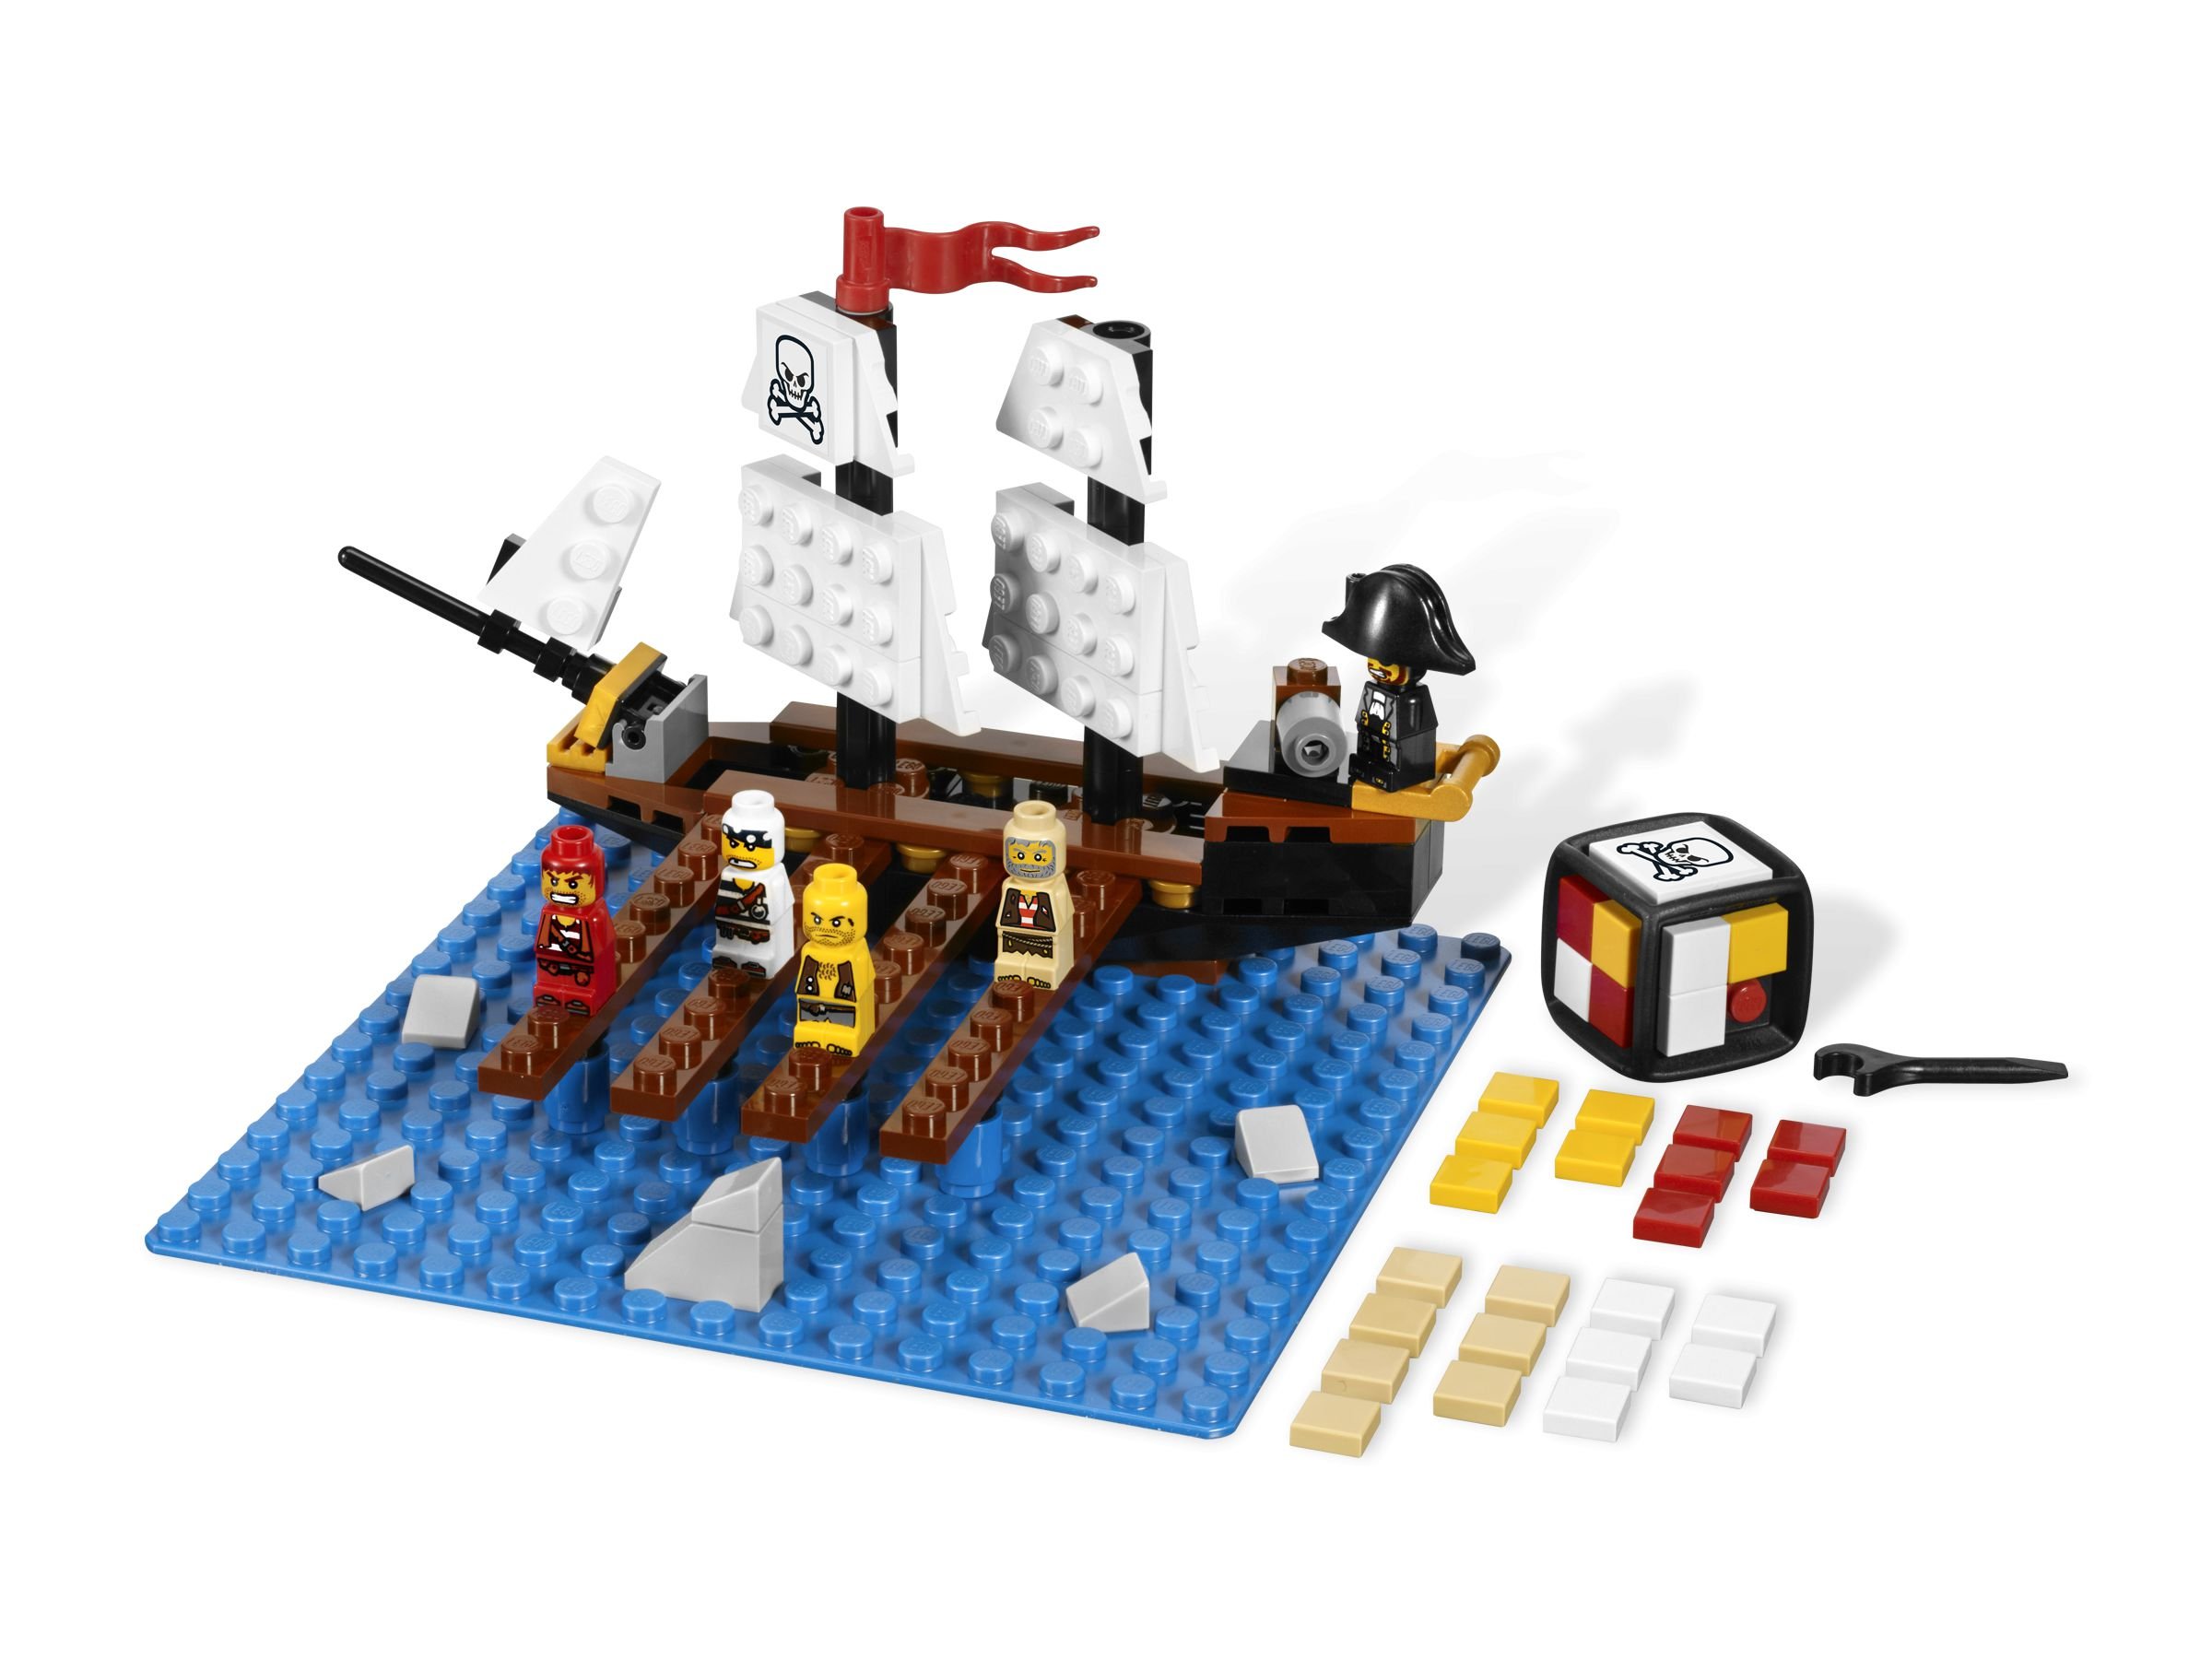 LEGO Games 3848 Pirate Plank LEGO_3848_alt1.jpg